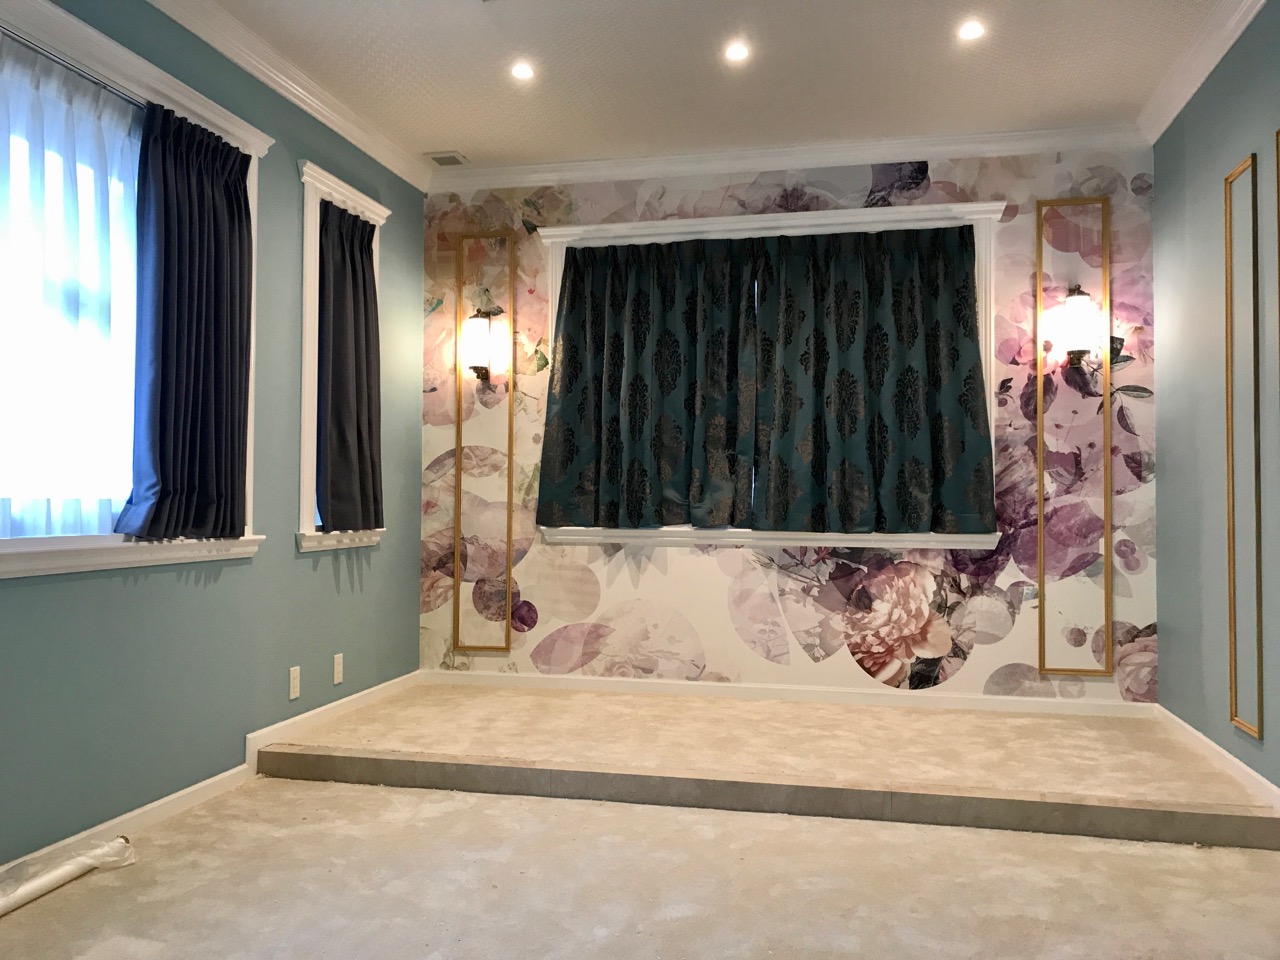 京都市中京区 新築ホテル ティファニーブルーが印象的な客室にオーダーカーテンを納品 京都でカーテンを買うなら一流の職人による自社縫製ができる島田装飾